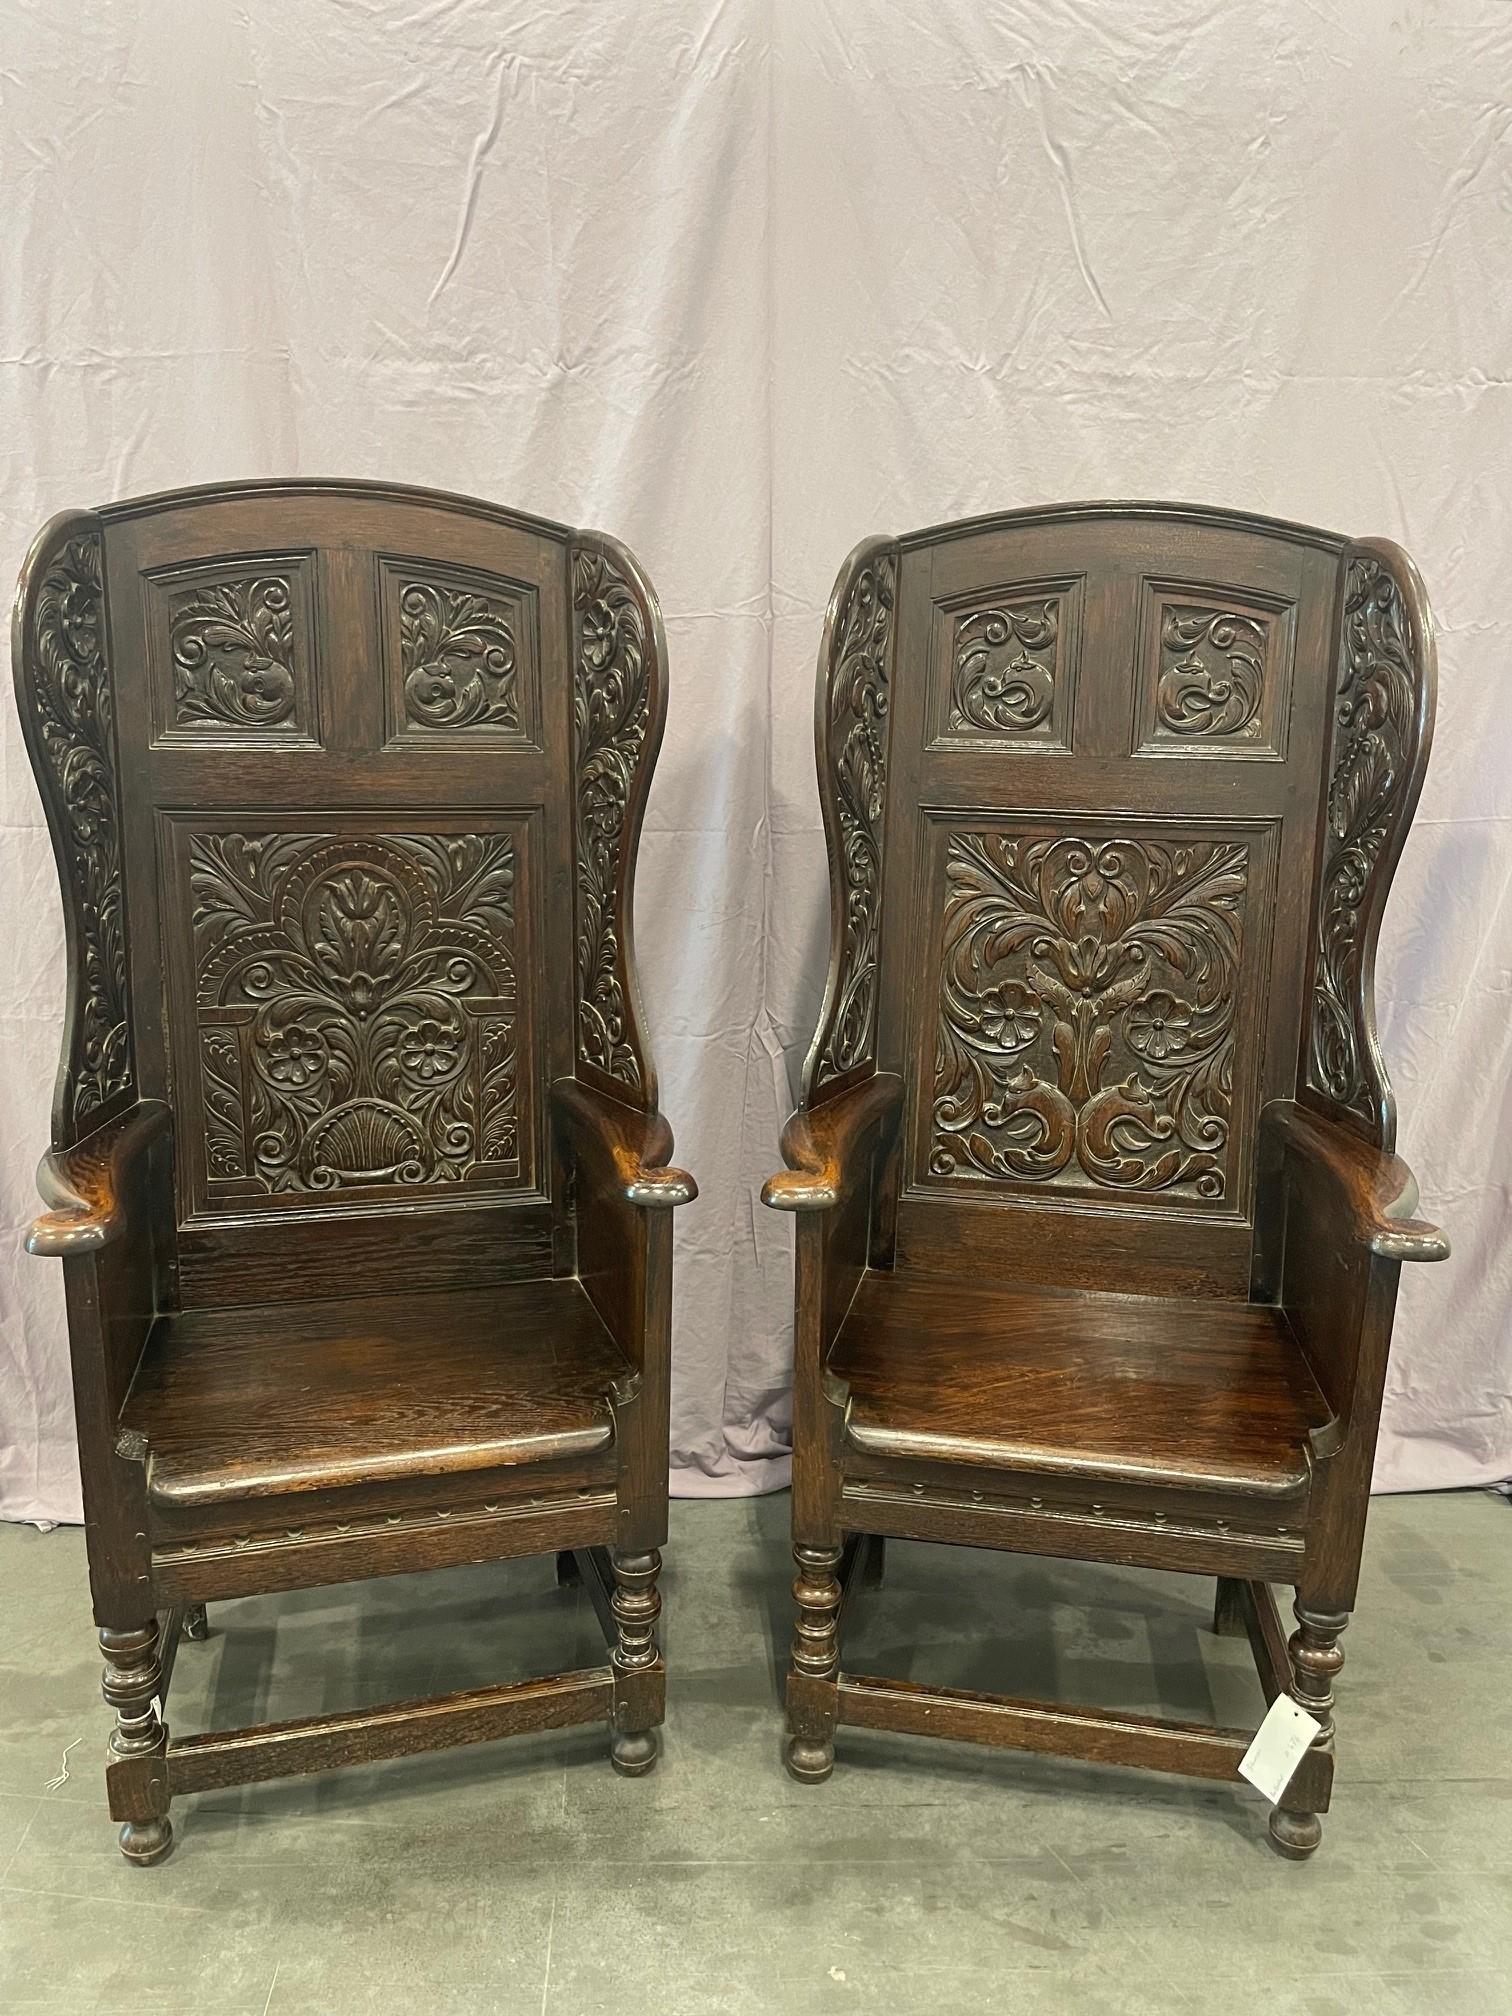 Ein schönes Paar stark geschnitzter viktorianischer Eichenflügelsessel. Diese Stühle haben komplizierte Schnitzereien an den Rückwänden, den Seitenflügeln und den äußeren Seitenwänden, die alle im Stil des 17. CIRCA 1850

Provenienz: Diese wurden